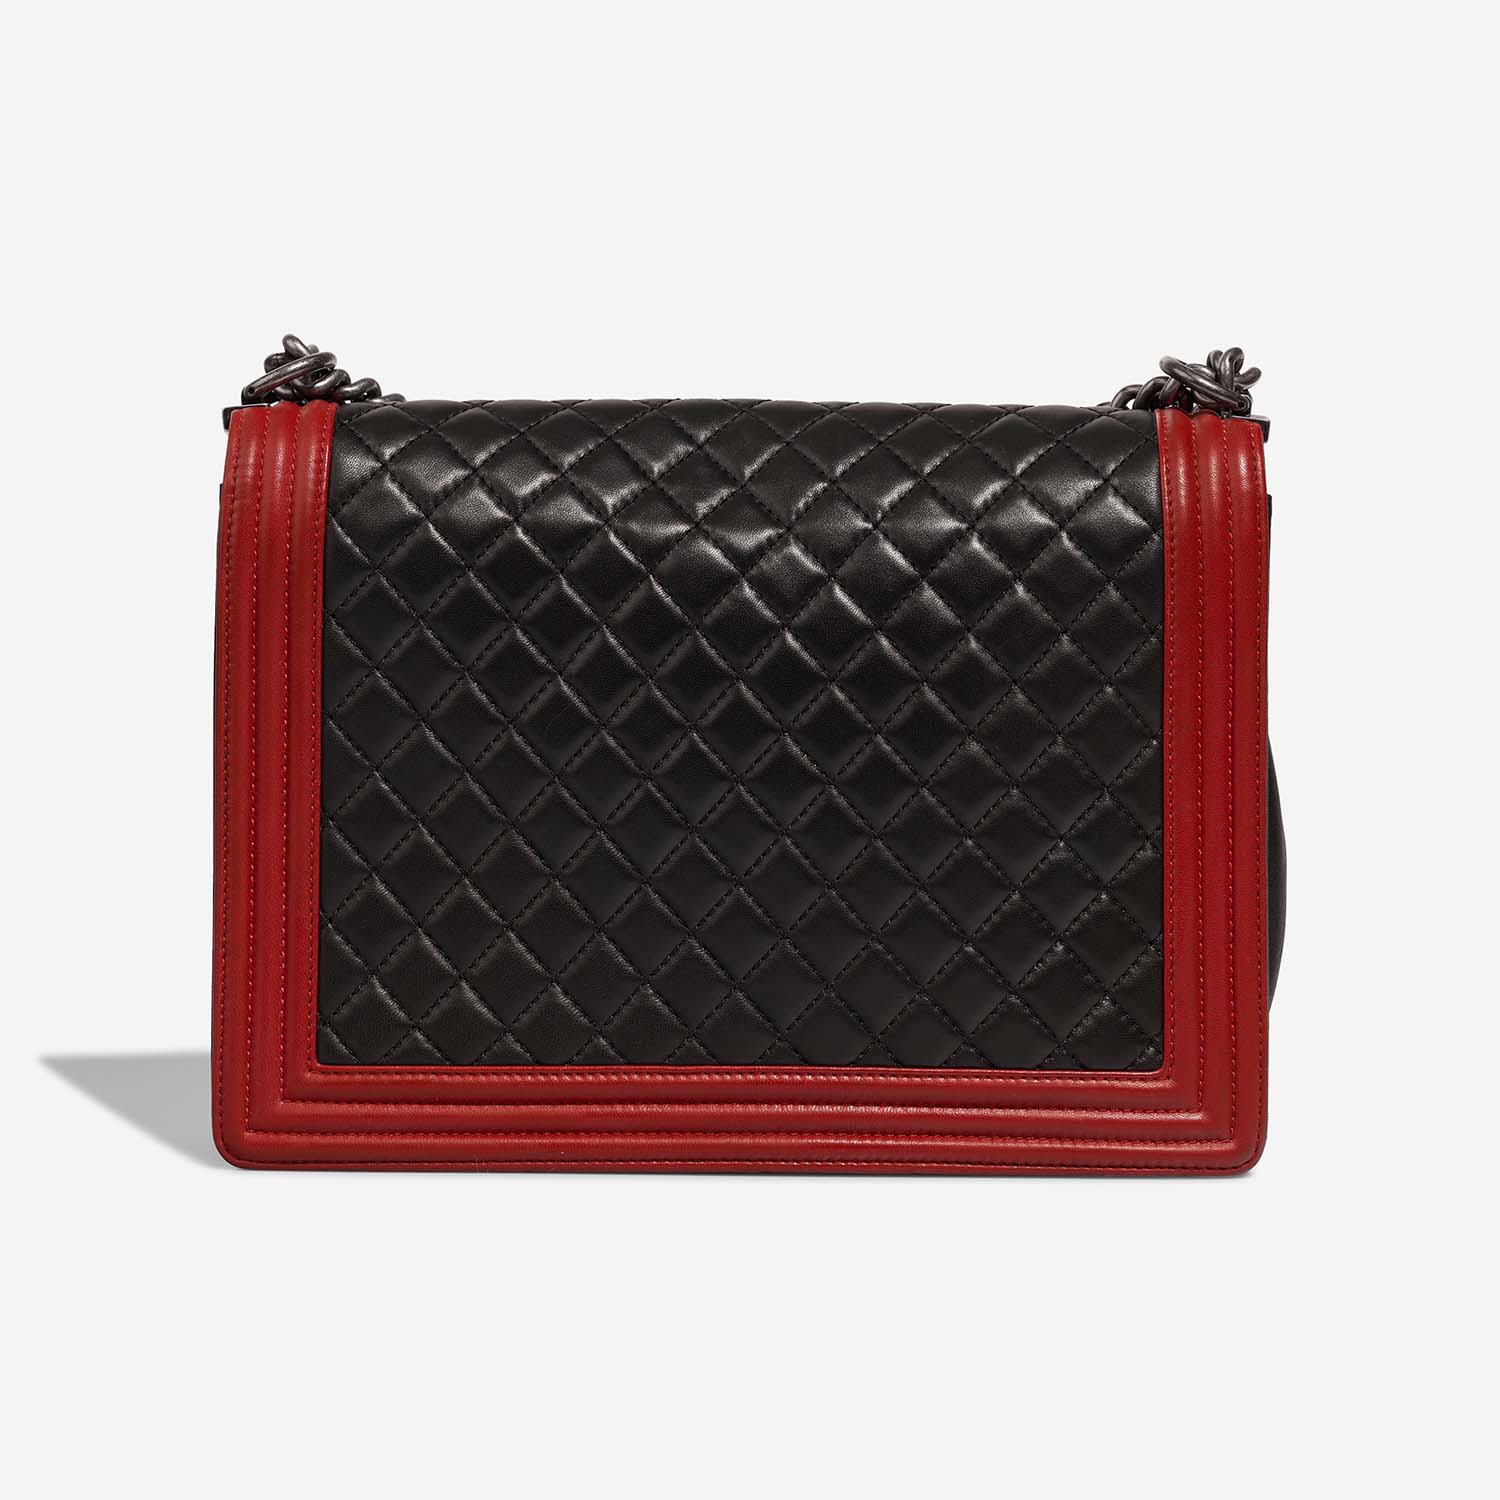 Chanel Boy Large Black-Red Back | Verkaufen Sie Ihre Designer-Tasche auf Saclab.com